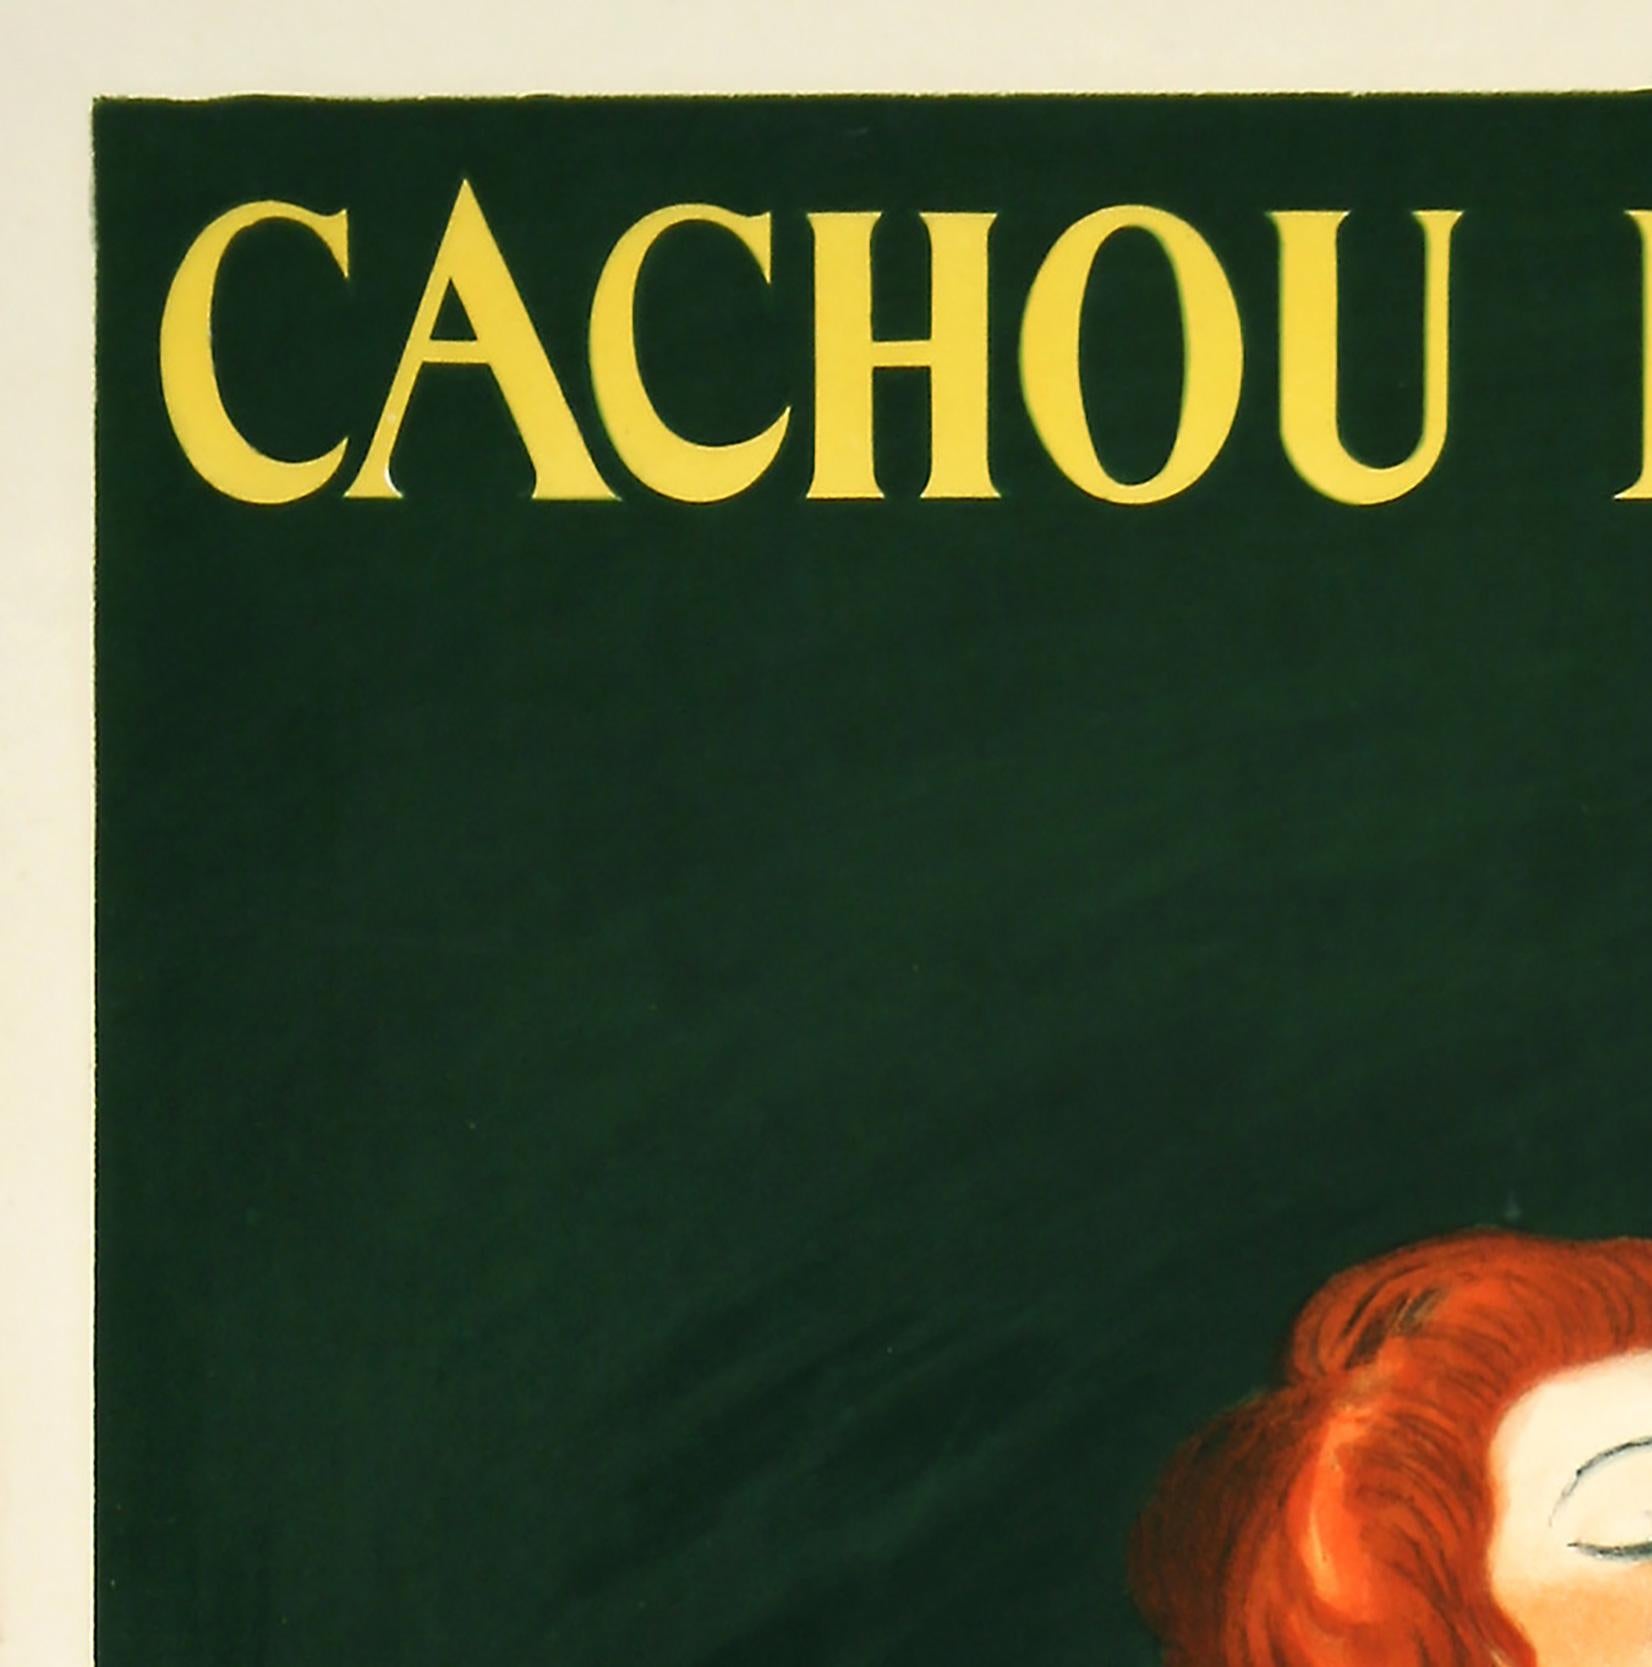 Cachou Lajaunie 1922 Cartel publicitario francés vintage, Leonetto Cappiello Francés en venta